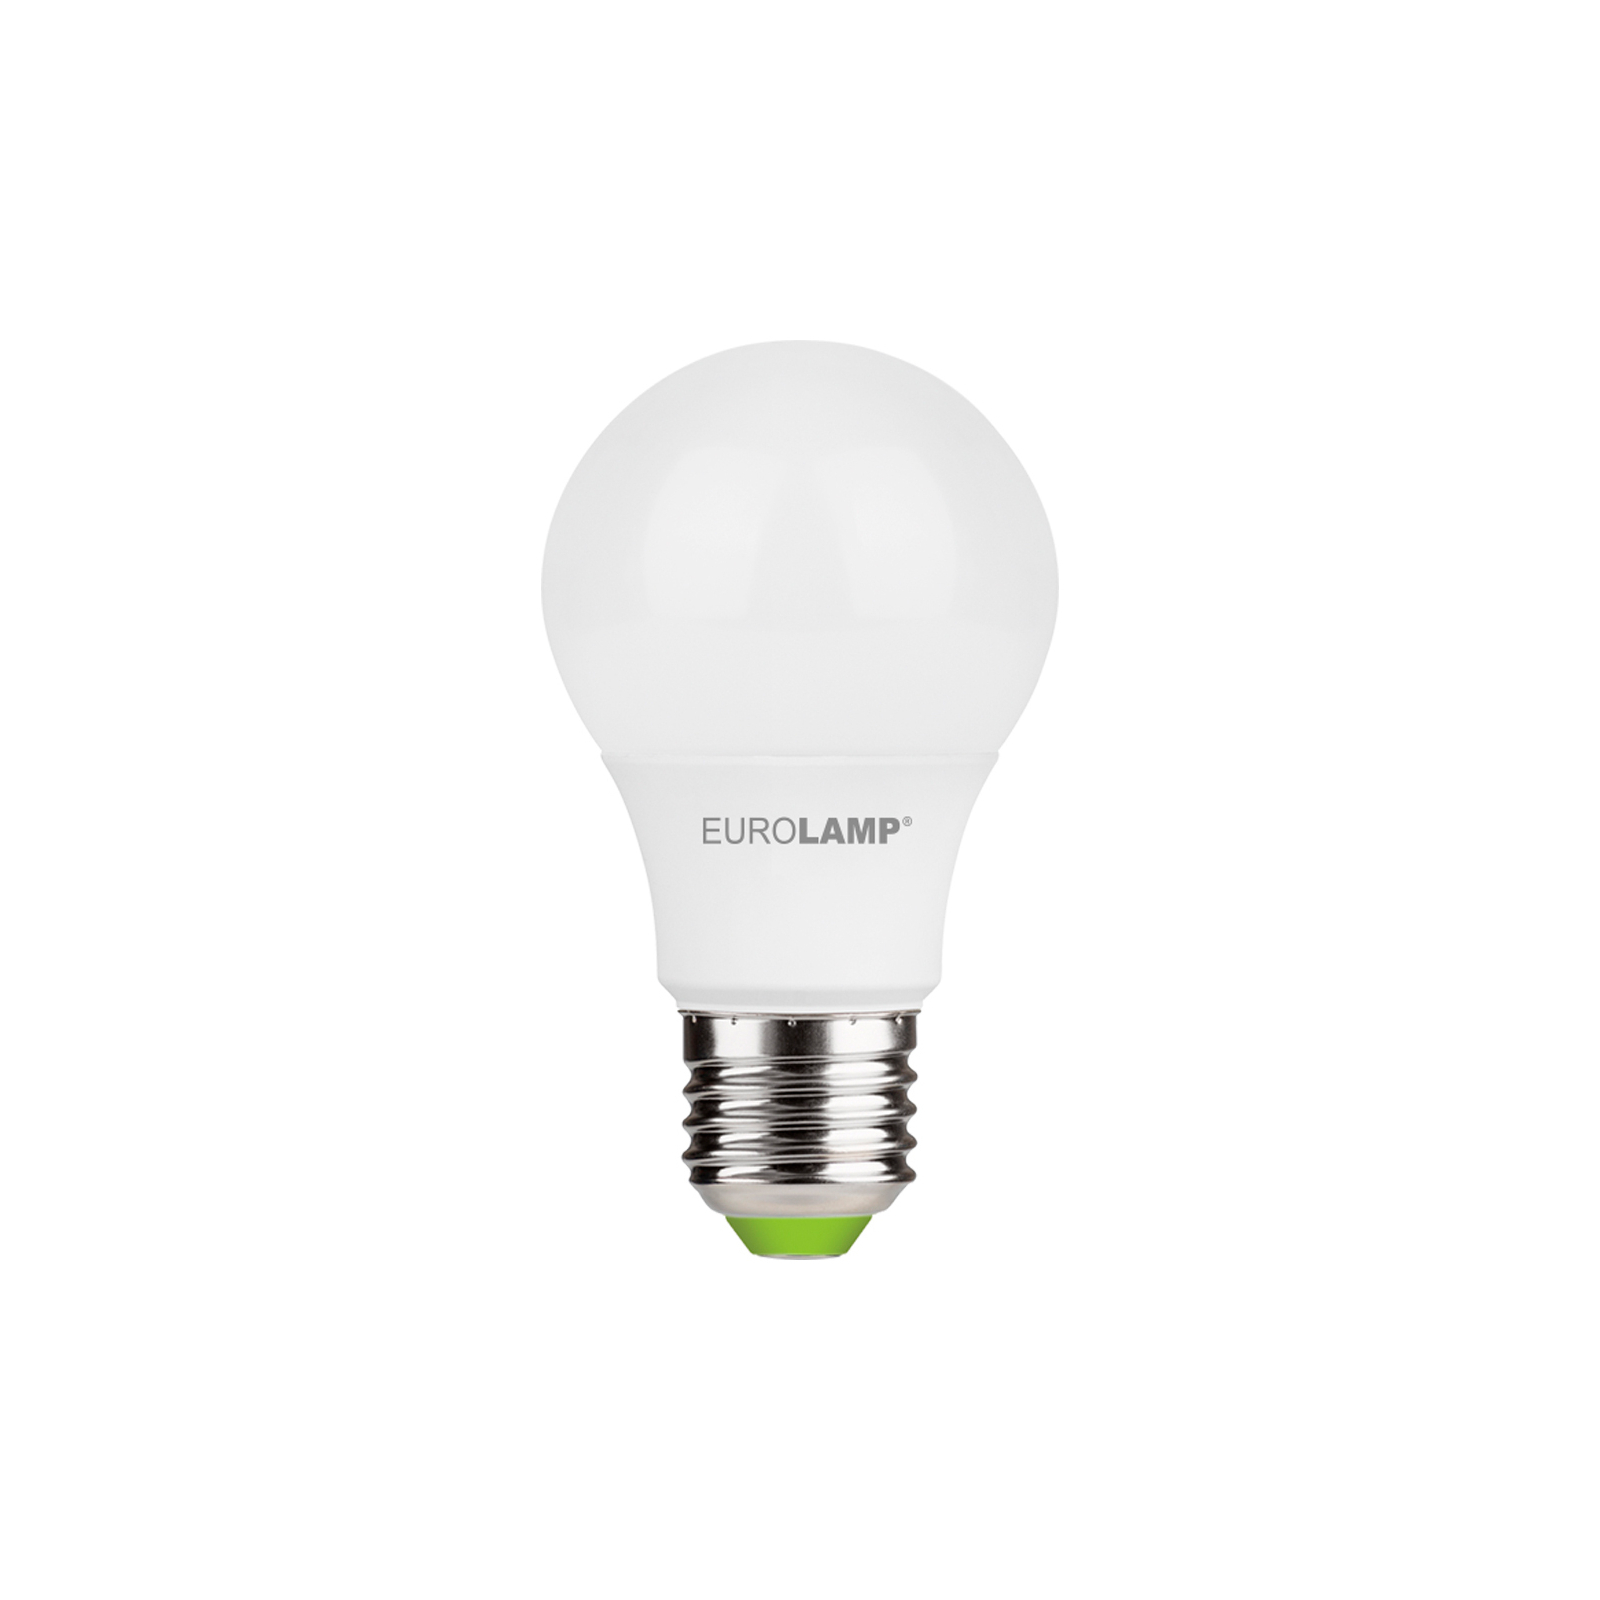 Лампочка Eurolamp LED A60 7W E27 3000K 220V акция 1+1 (MLP-LED-A60-07272(E)) зображення 2